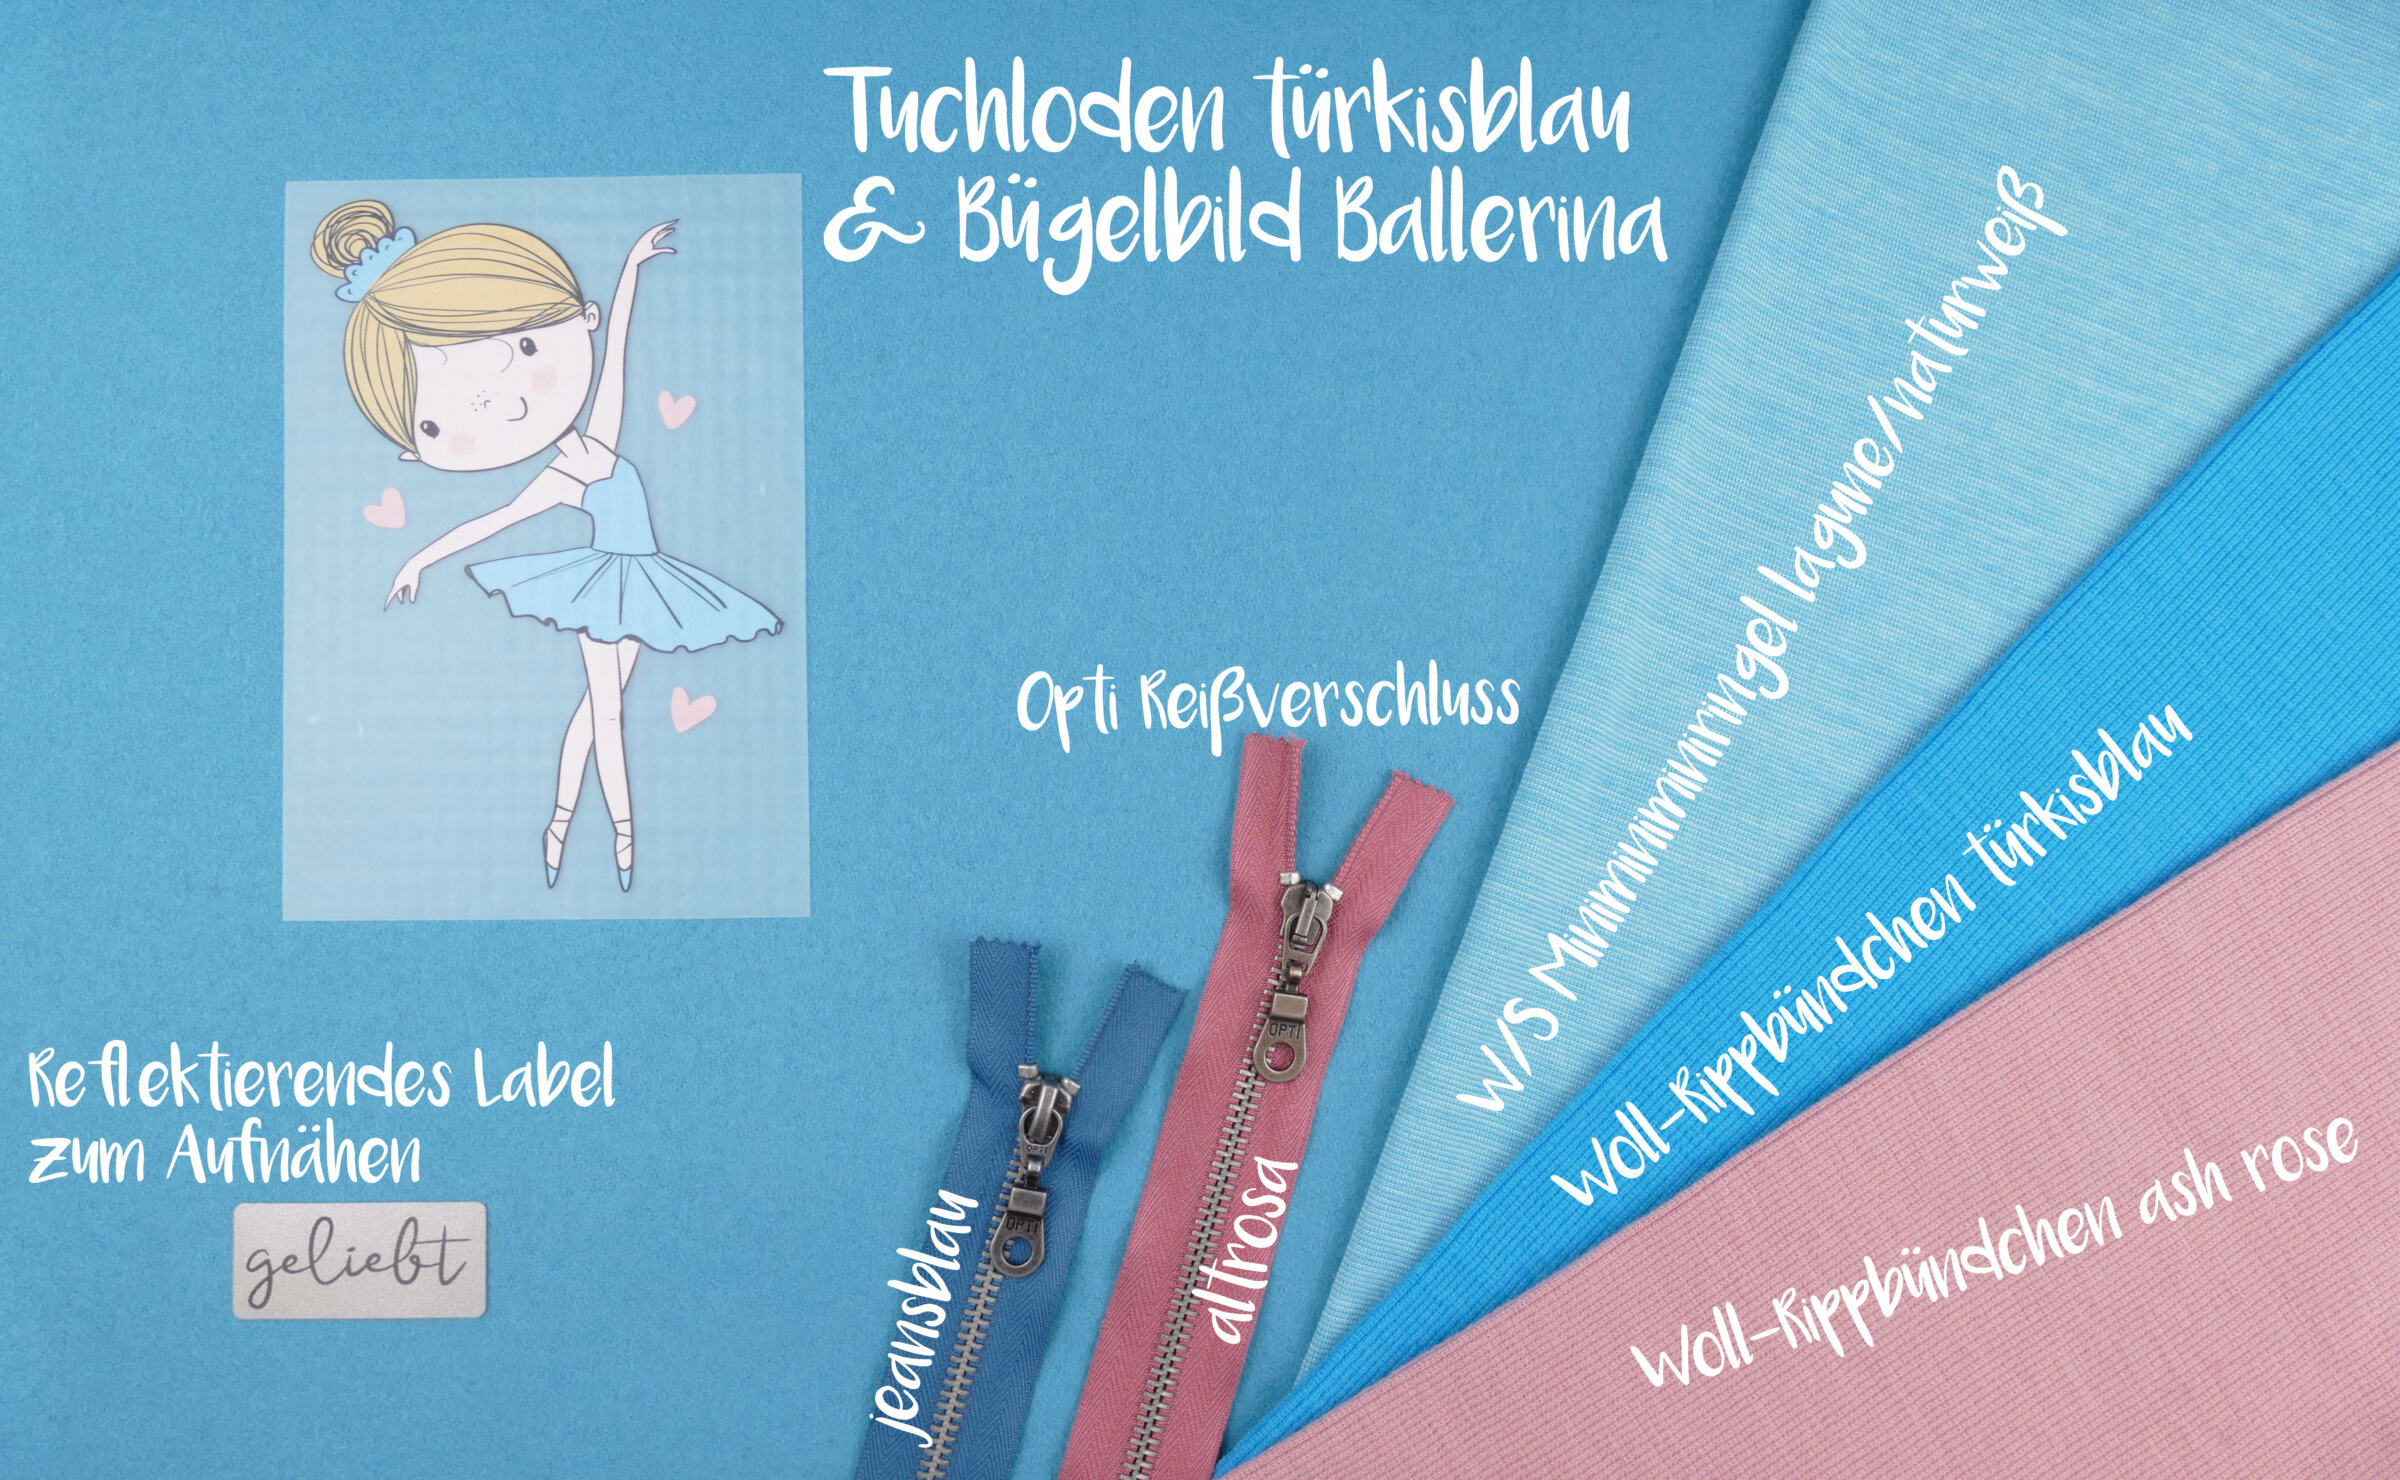 Bügelbild ballerina Tuchloden türkisblau